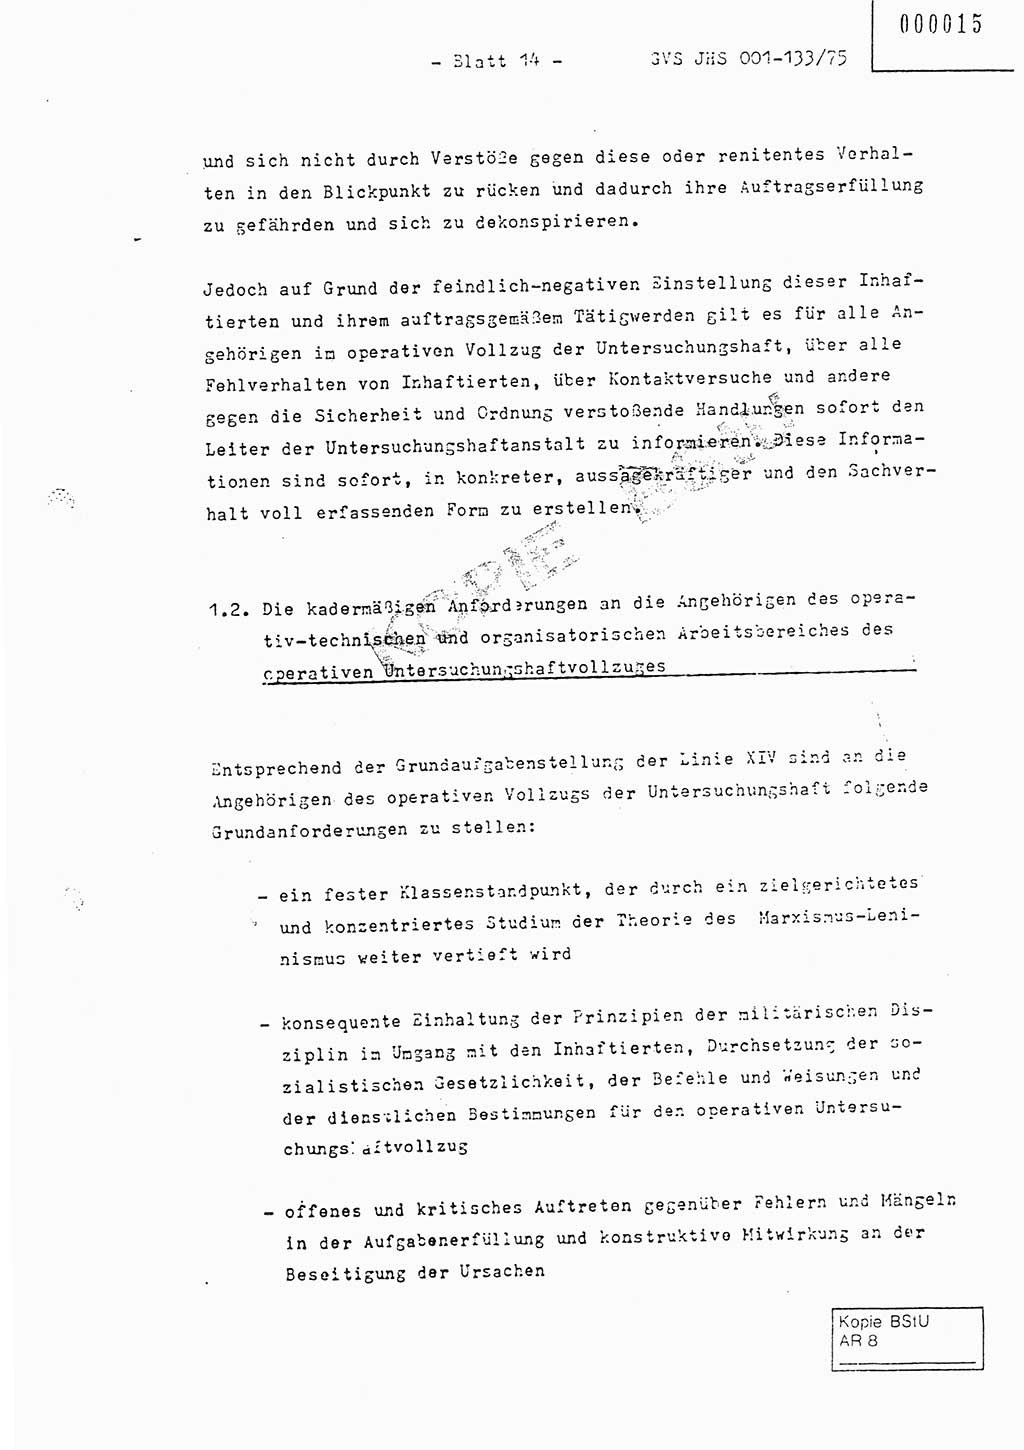 Fachschulabschlußarbeit Major Werner Braun (Abt. ⅩⅣ), Hauptmann Klaus Zeiß (Abt. ⅩⅣ), Ministerium für Staatssicherheit (MfS) [Deutsche Demokratische Republik (DDR)], Juristische Hochschule (JHS), Geheime Verschlußsache (GVS) 001-133/75, Potsdam 1976, Blatt 14 (FS-Abschl.-Arb. MfS DDR JHS GVS 001-133/75 1976, Bl. 14)